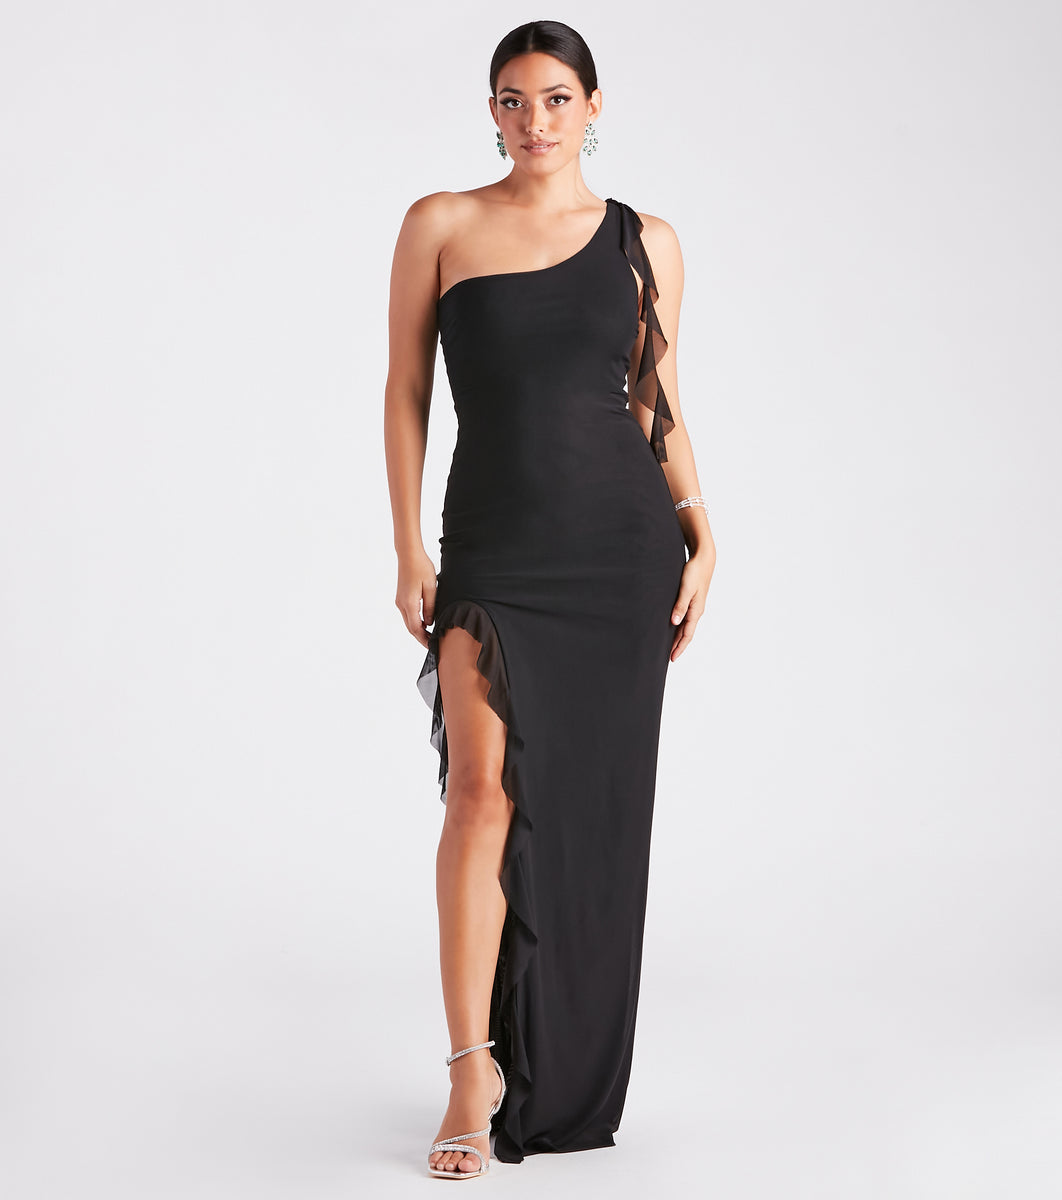 Brinley Formal One Shoulder Ruffle Dress & Windsor